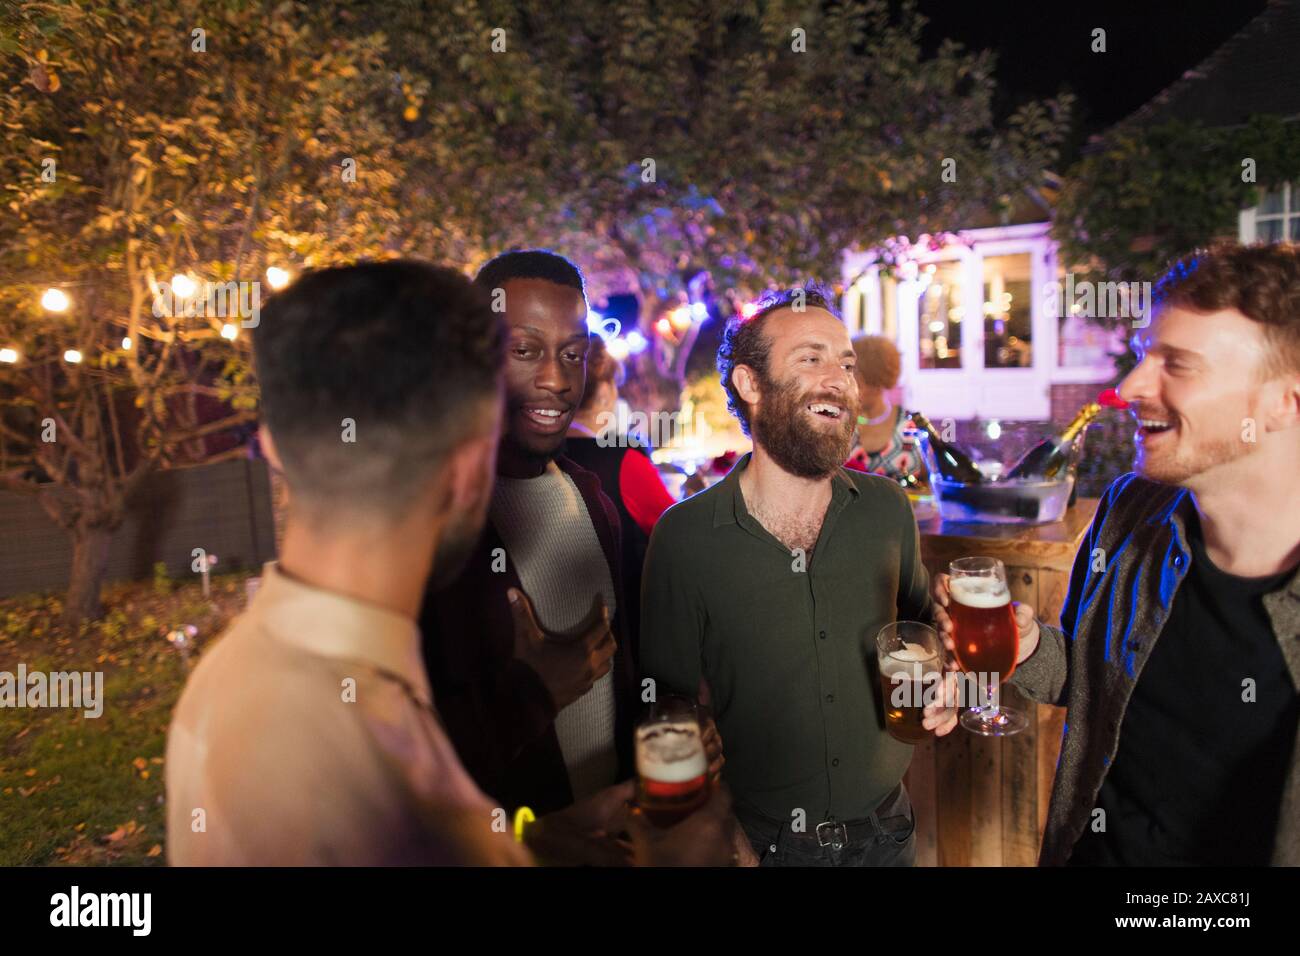 Amigos masculinos hablando y bebiendo en la fiesta del jardín Foto de stock